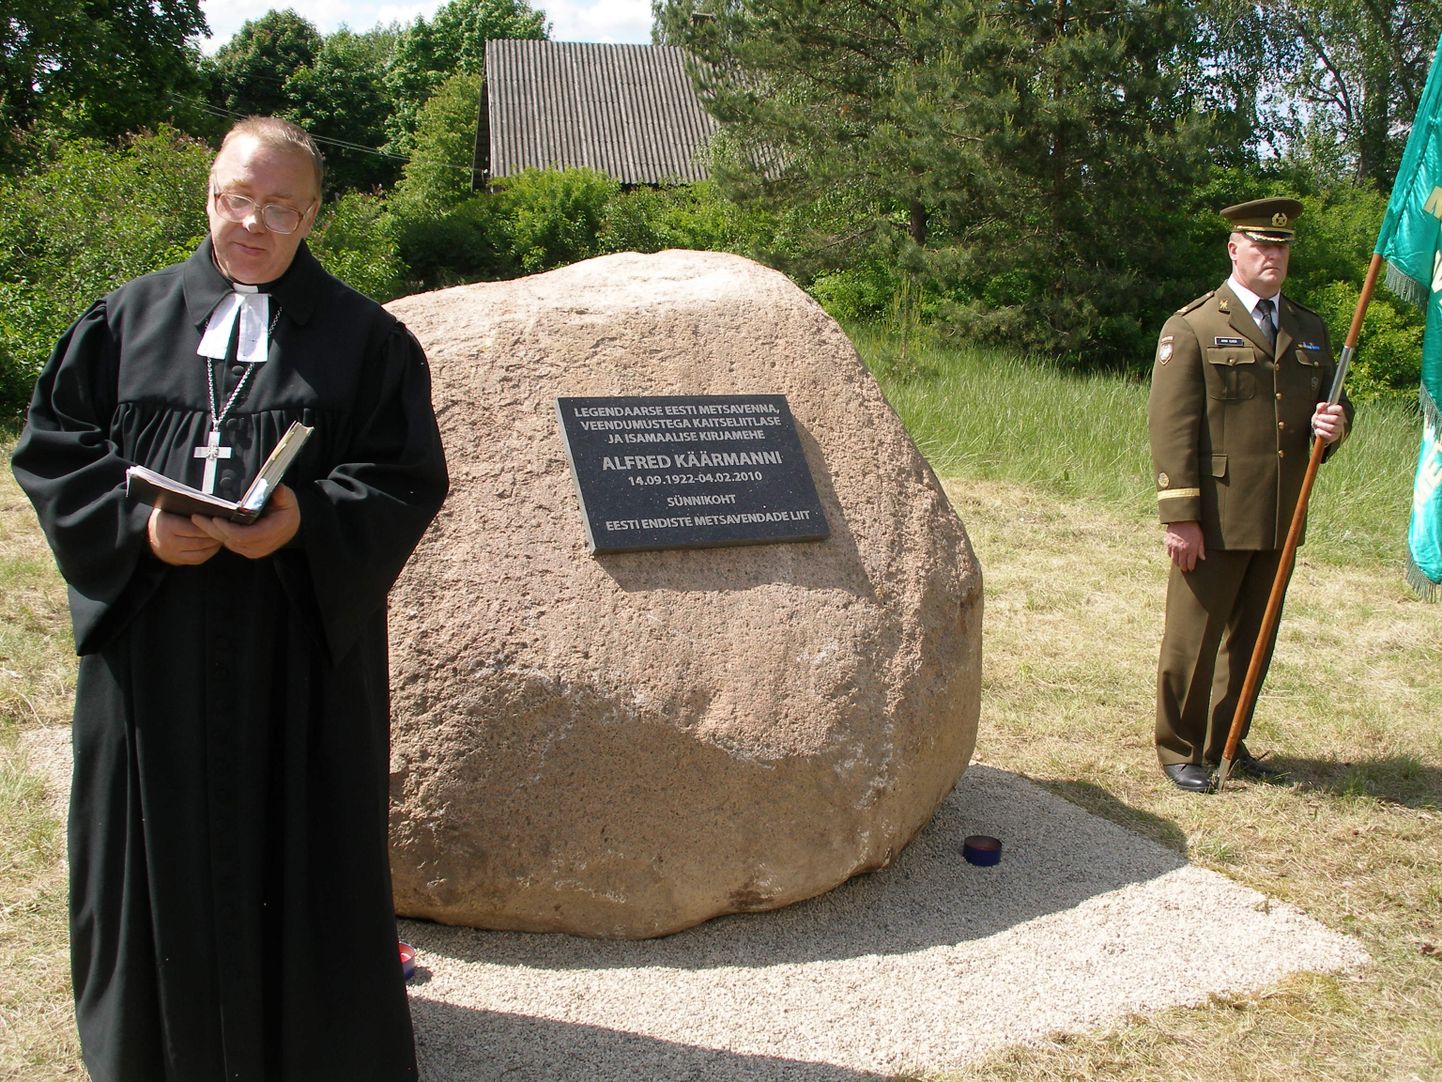 Vastseliina koguduse õpetaja Toivo Hollo avamas Alfred Käärmanni mälestuskivi.